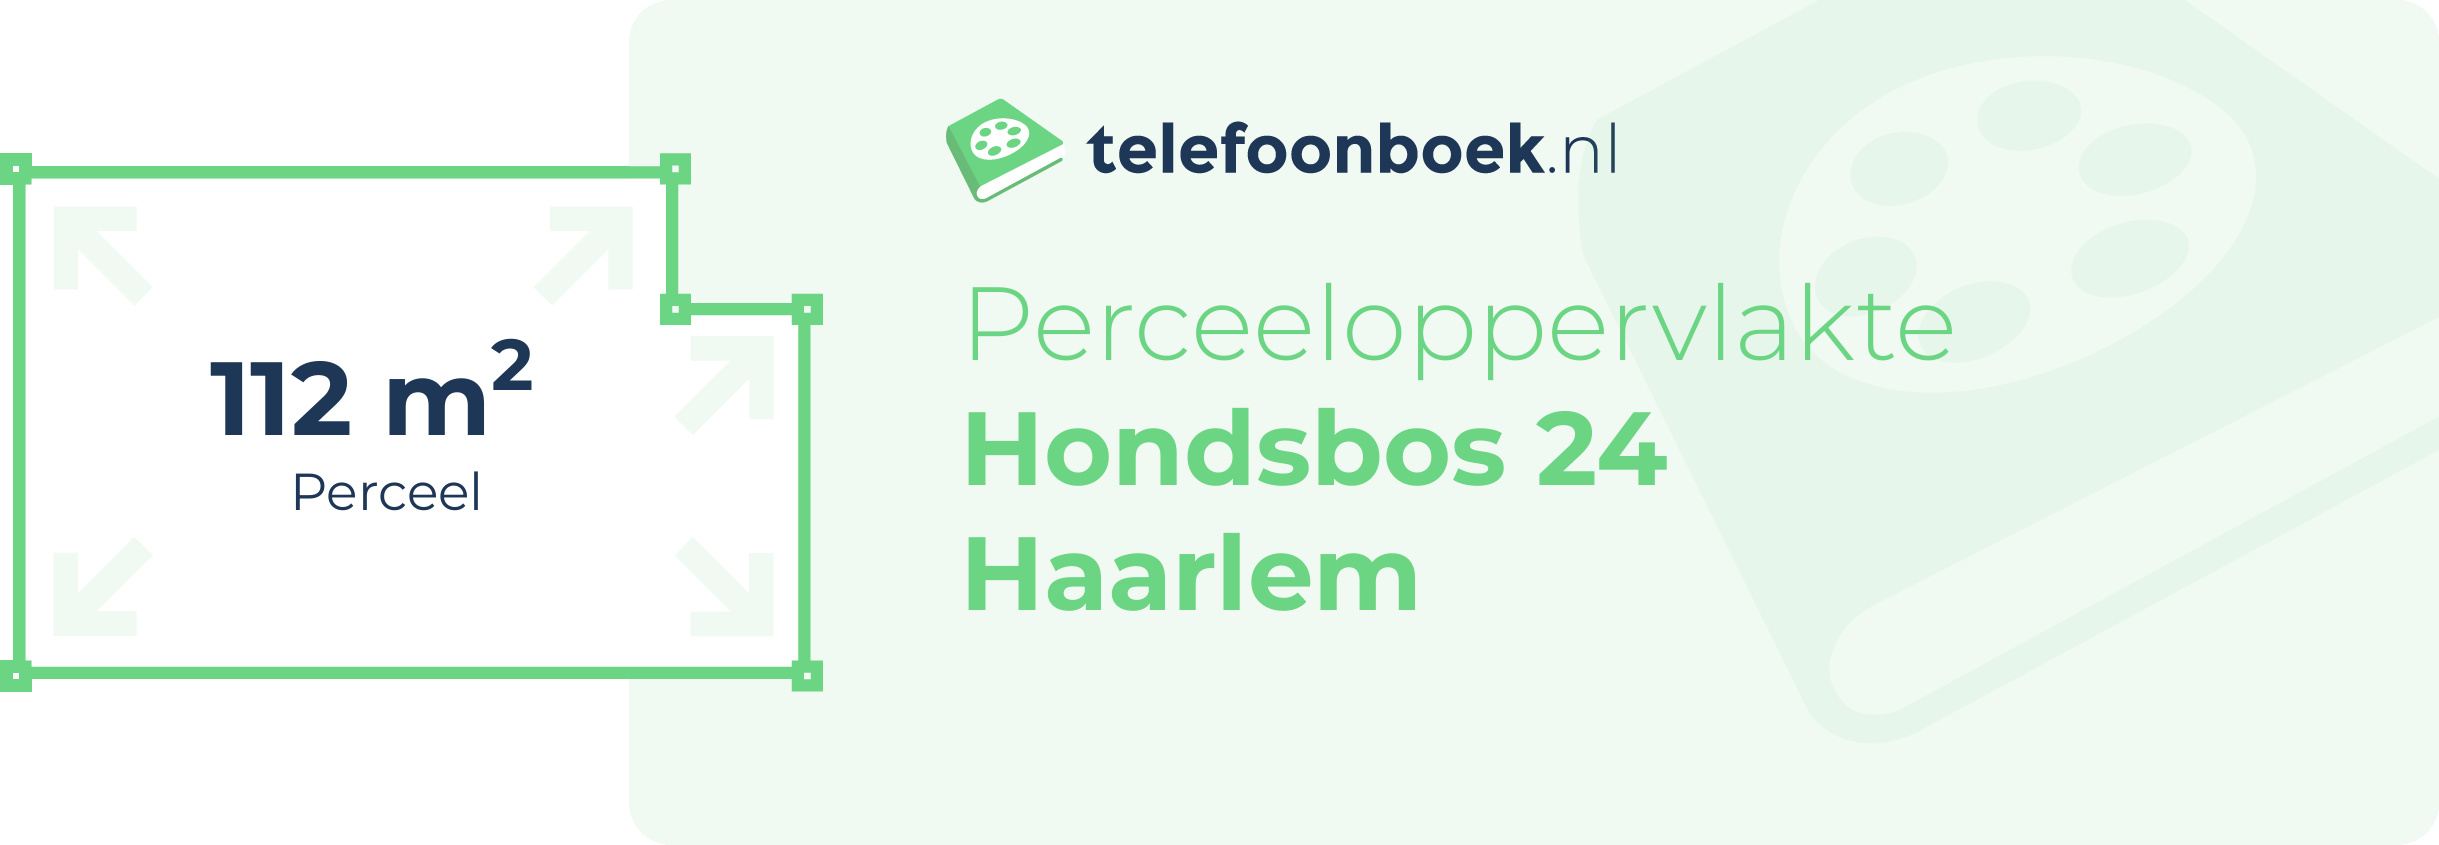 Perceeloppervlakte Hondsbos 24 Haarlem